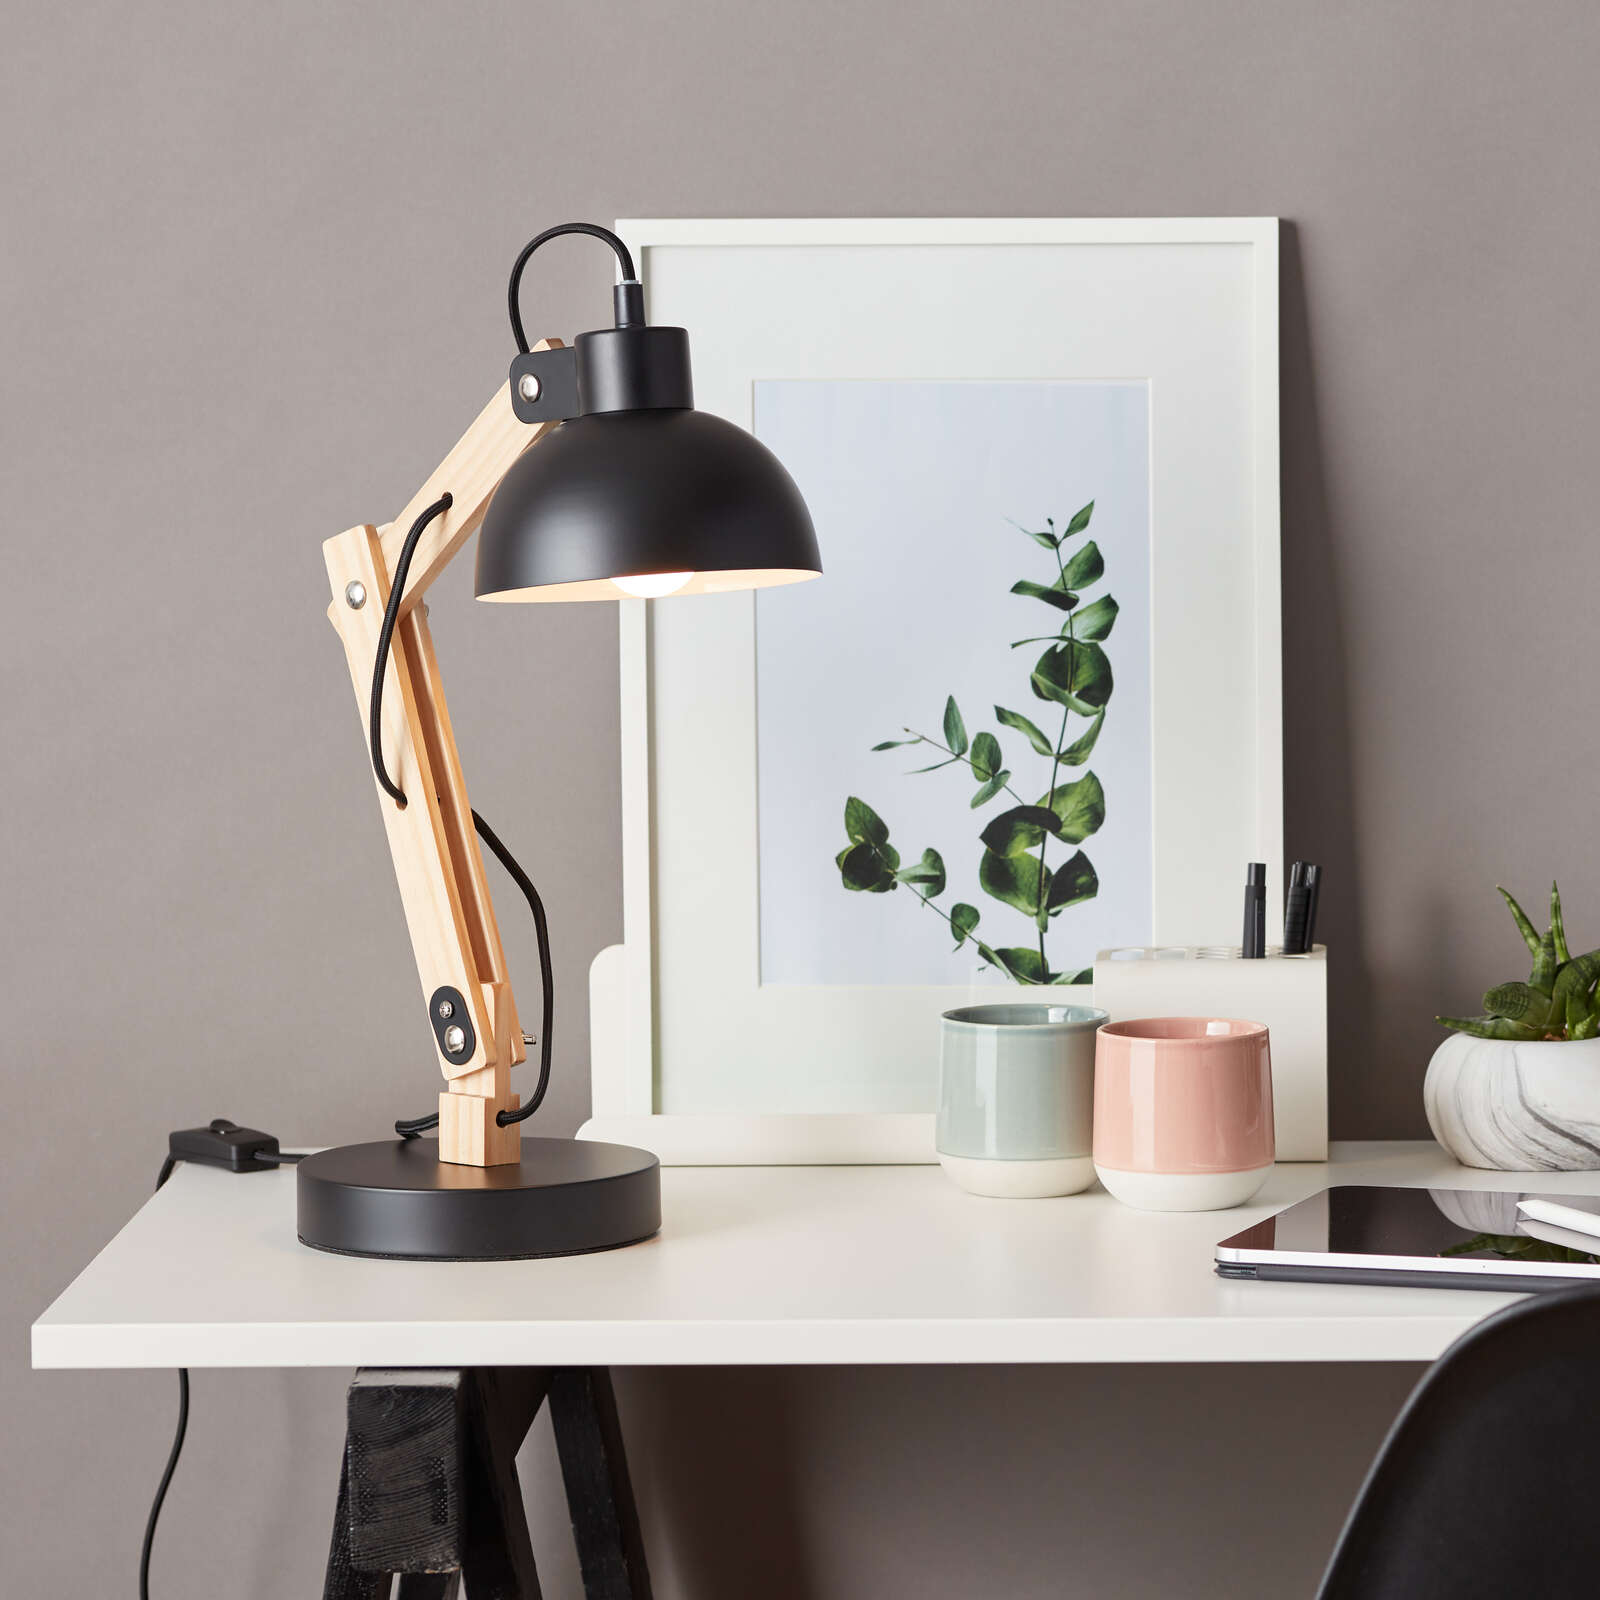             Lampe de table en bois - Lisa 2 - Noir
        